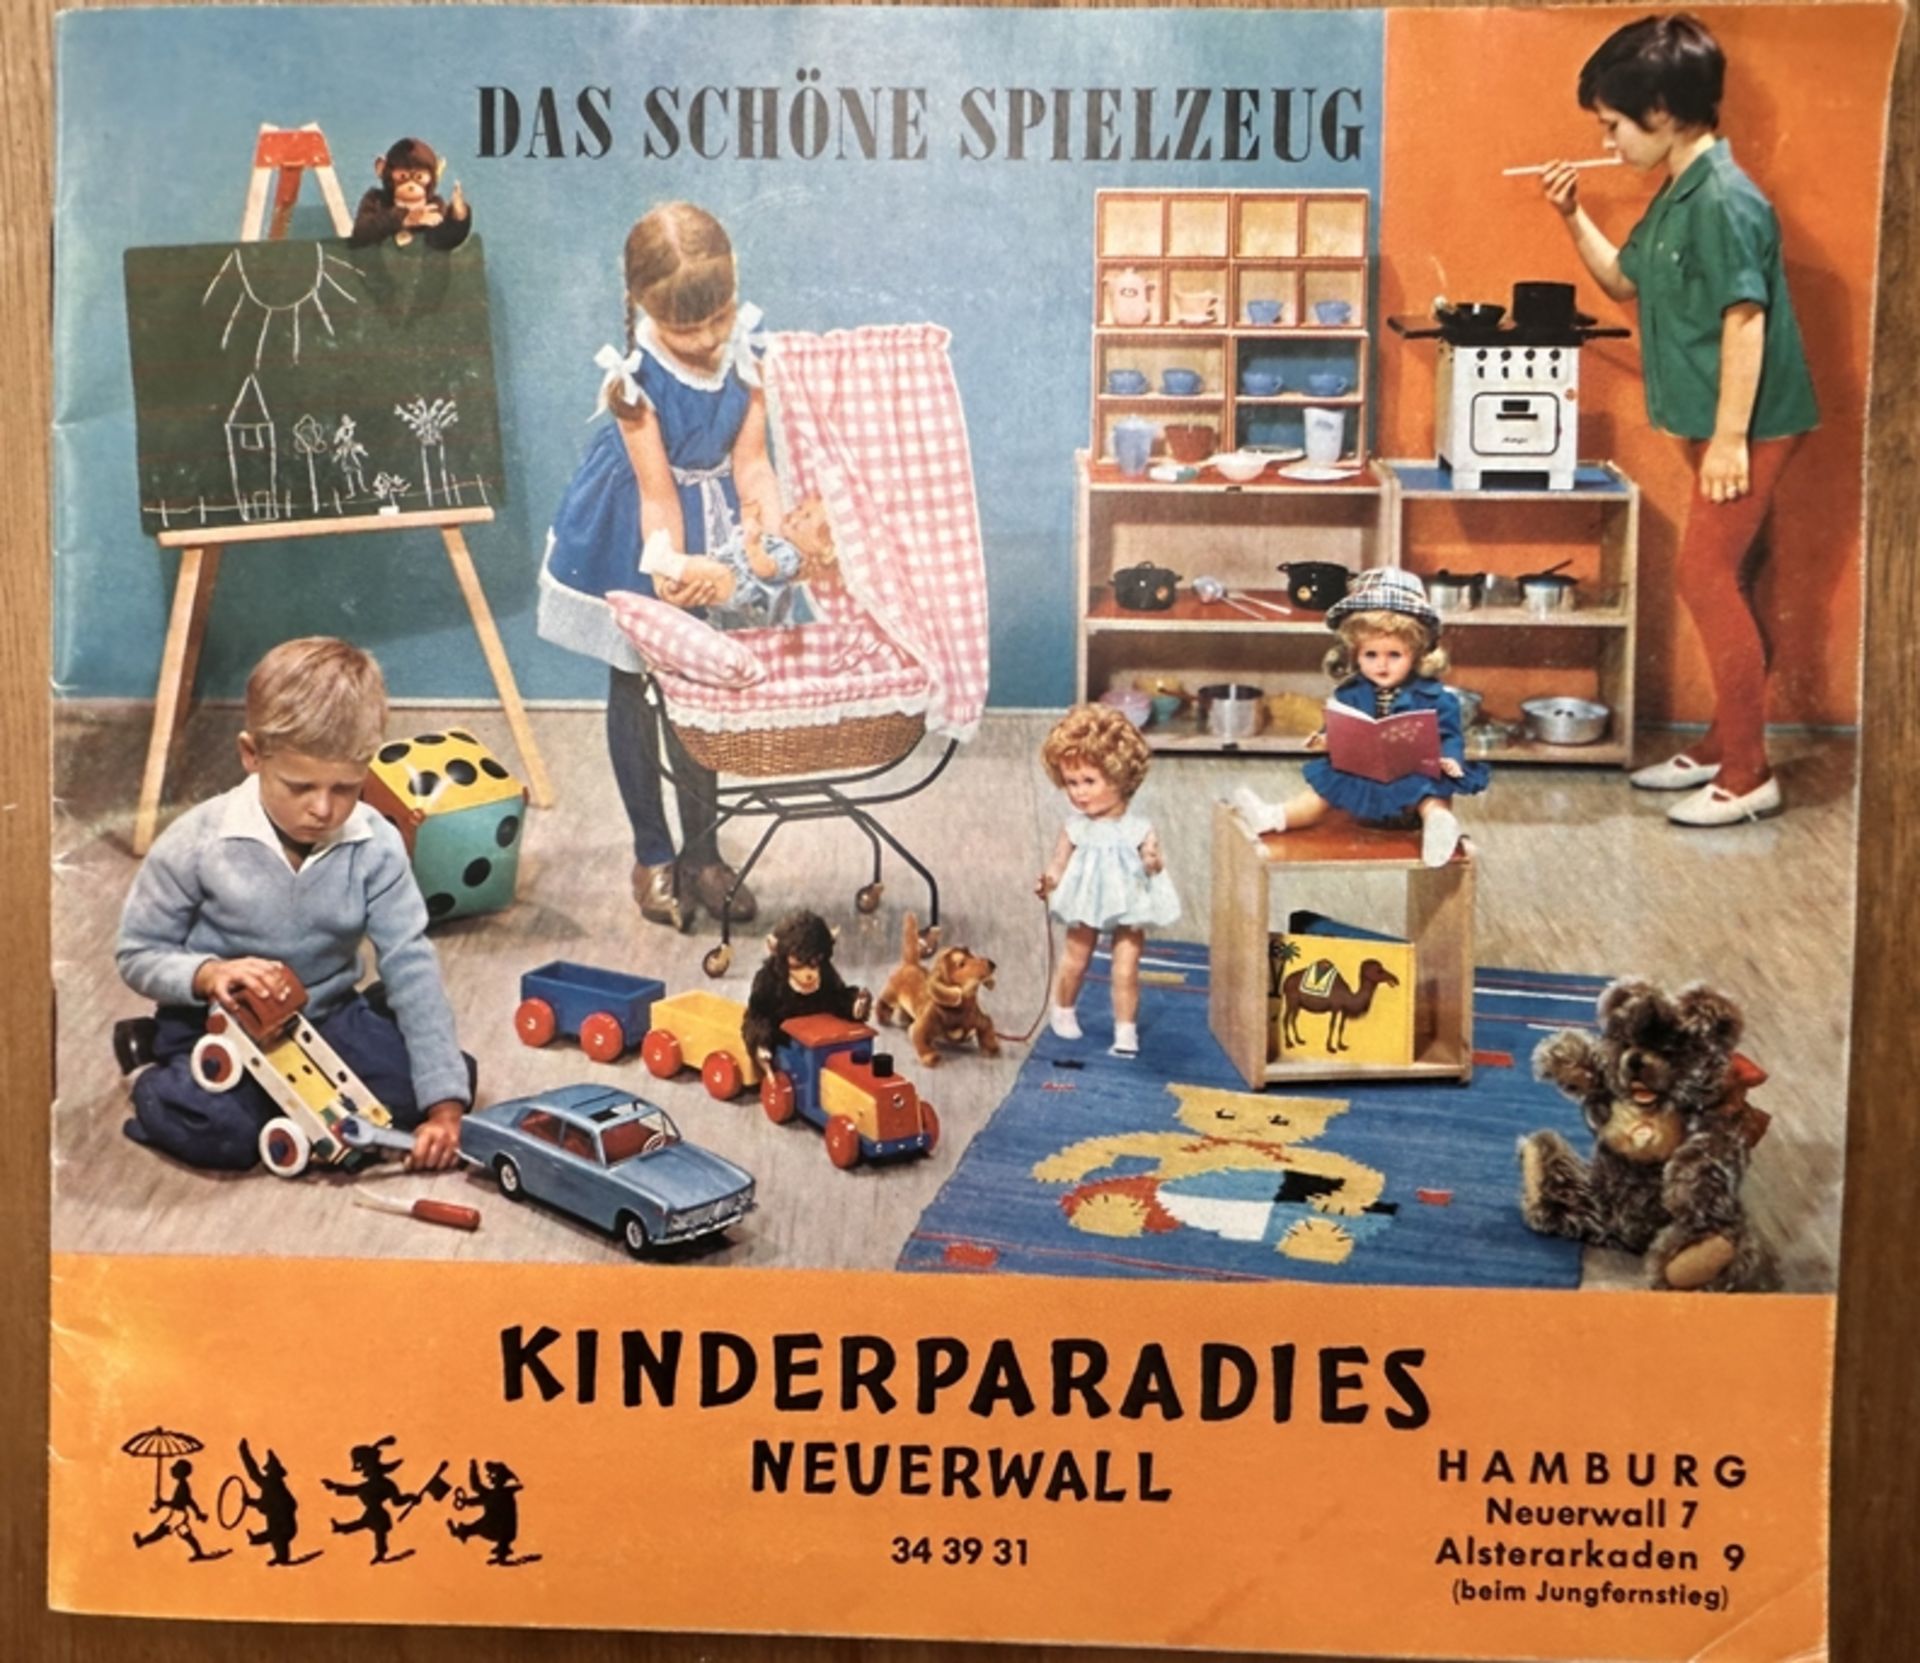 Prospekt "Das schöne Spielzeug" Kinderparadies Neuerwall, um 1950/60, ca. 50 Seiten, sehr gut erhal